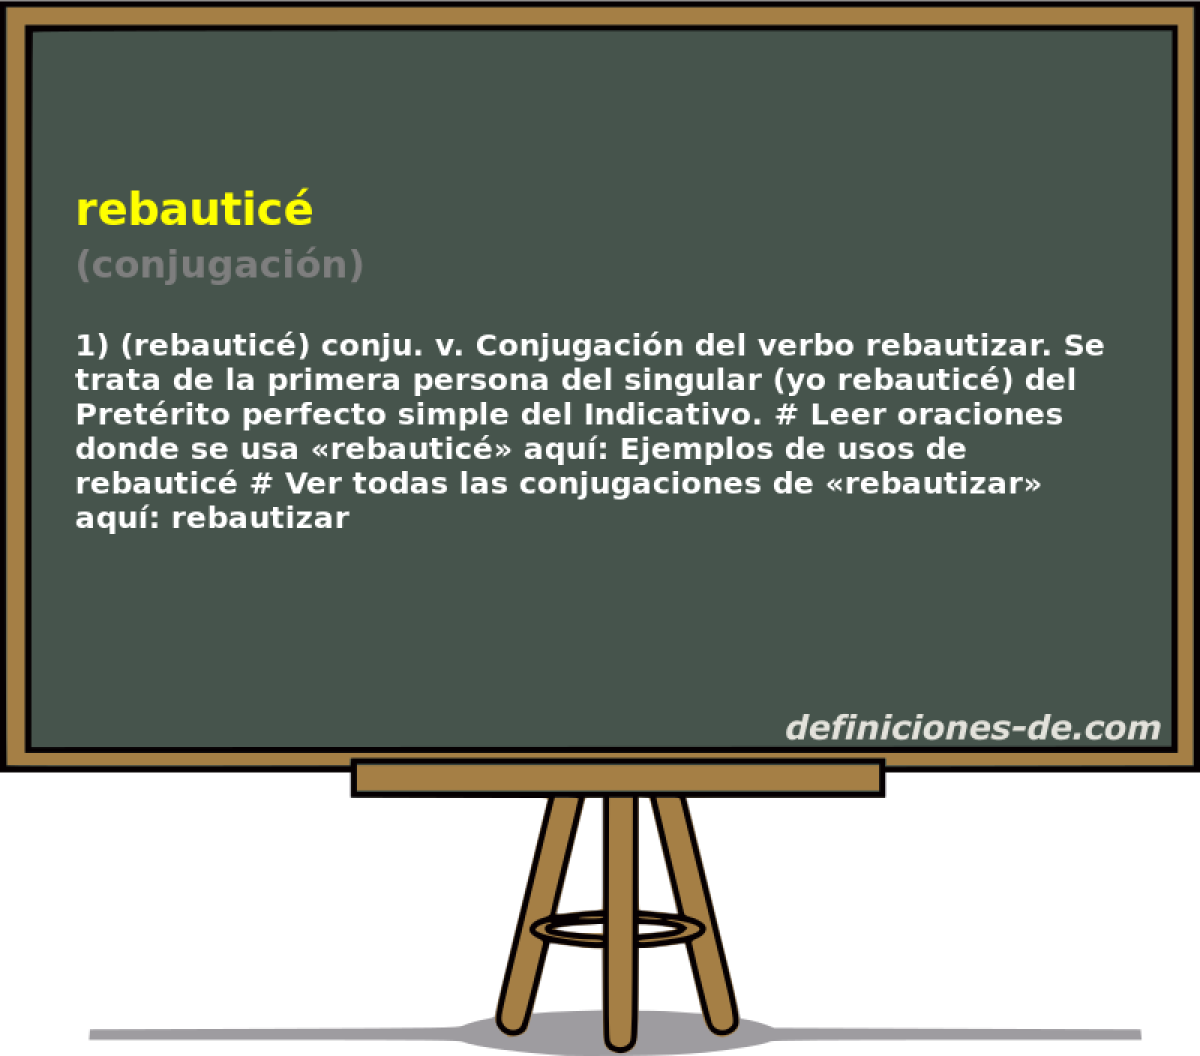 rebautic (conjugacin)